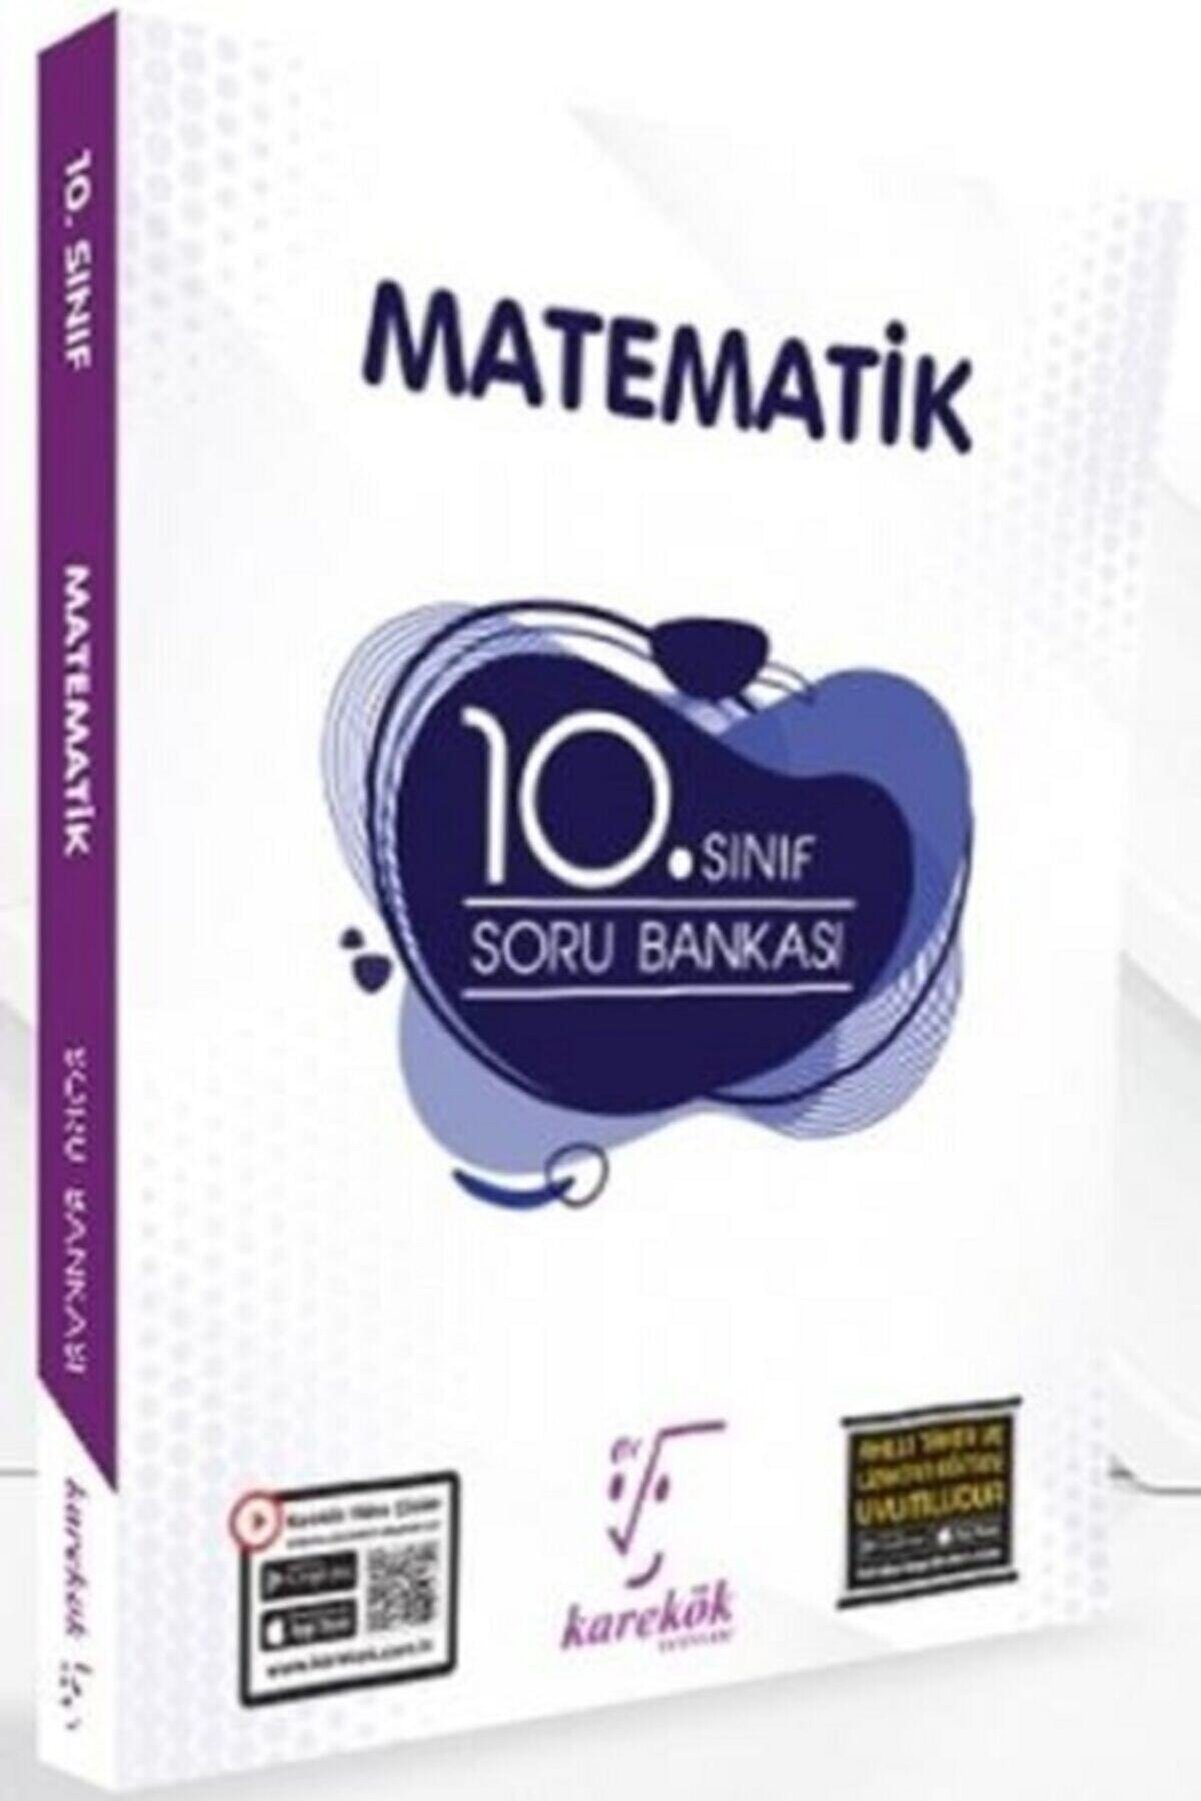 Karekök Yayınları Karekök 10. Sınıf Matematik Soru Bankası